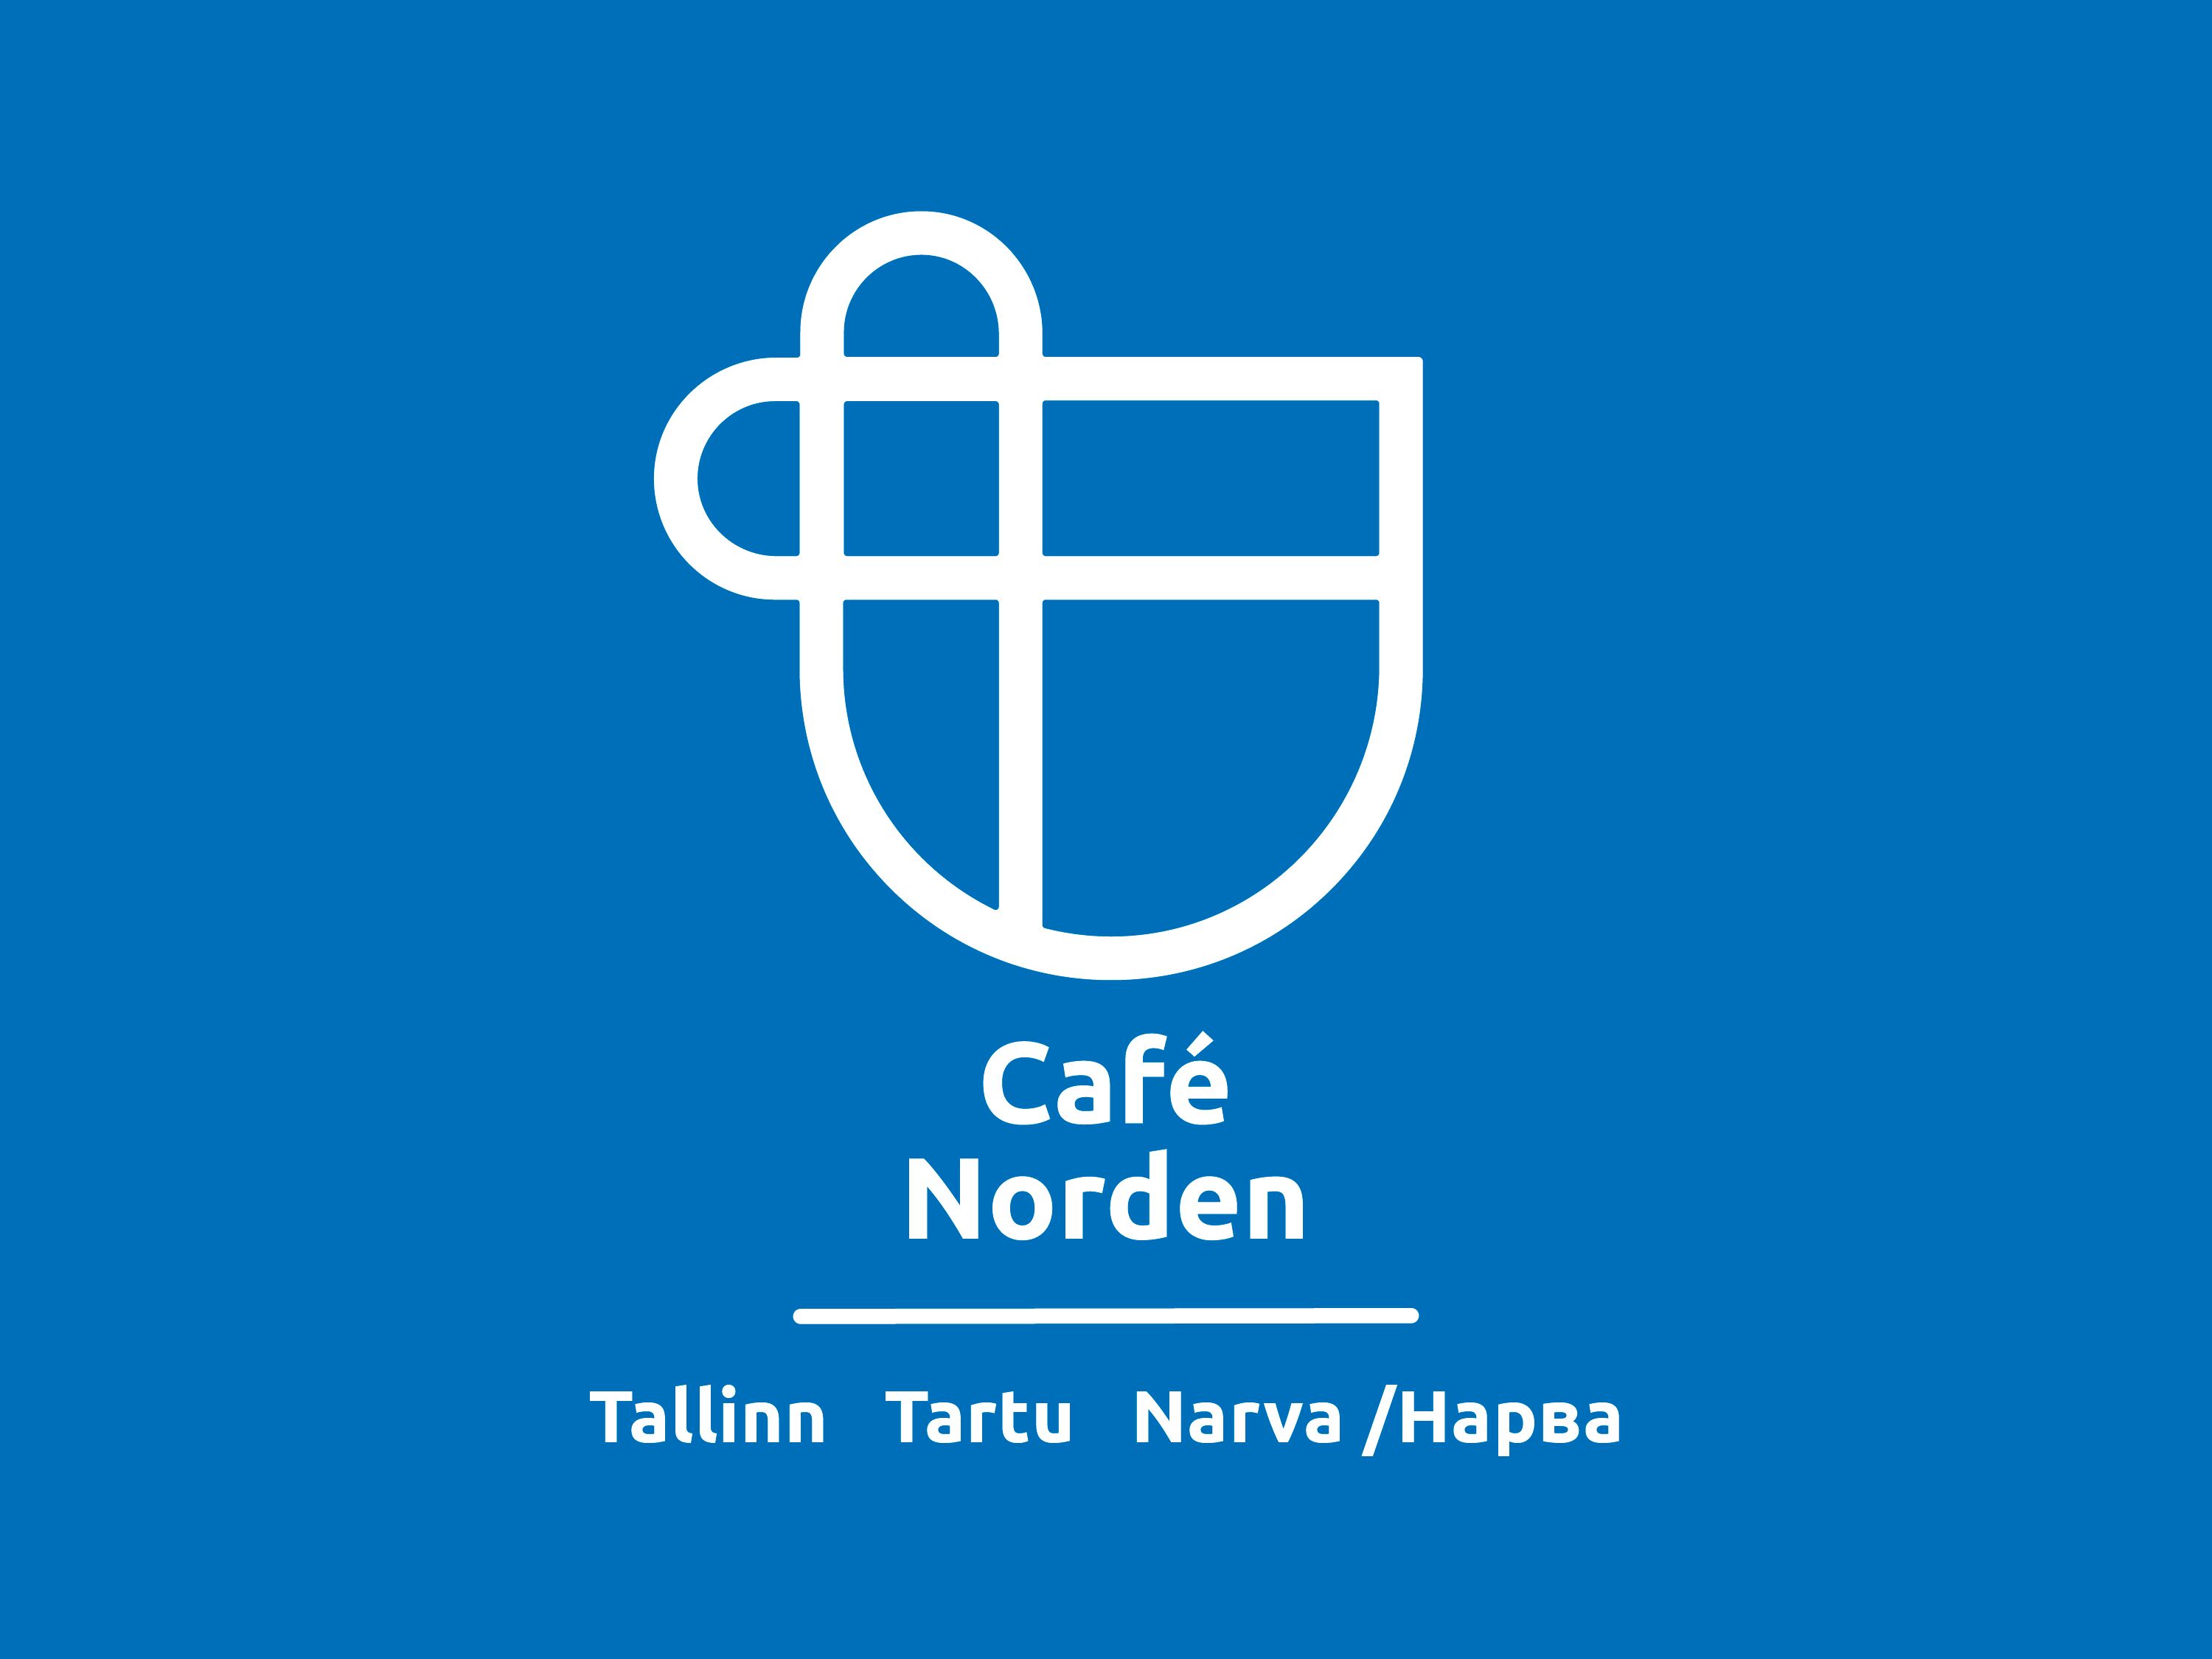 Cafe norden 720x540